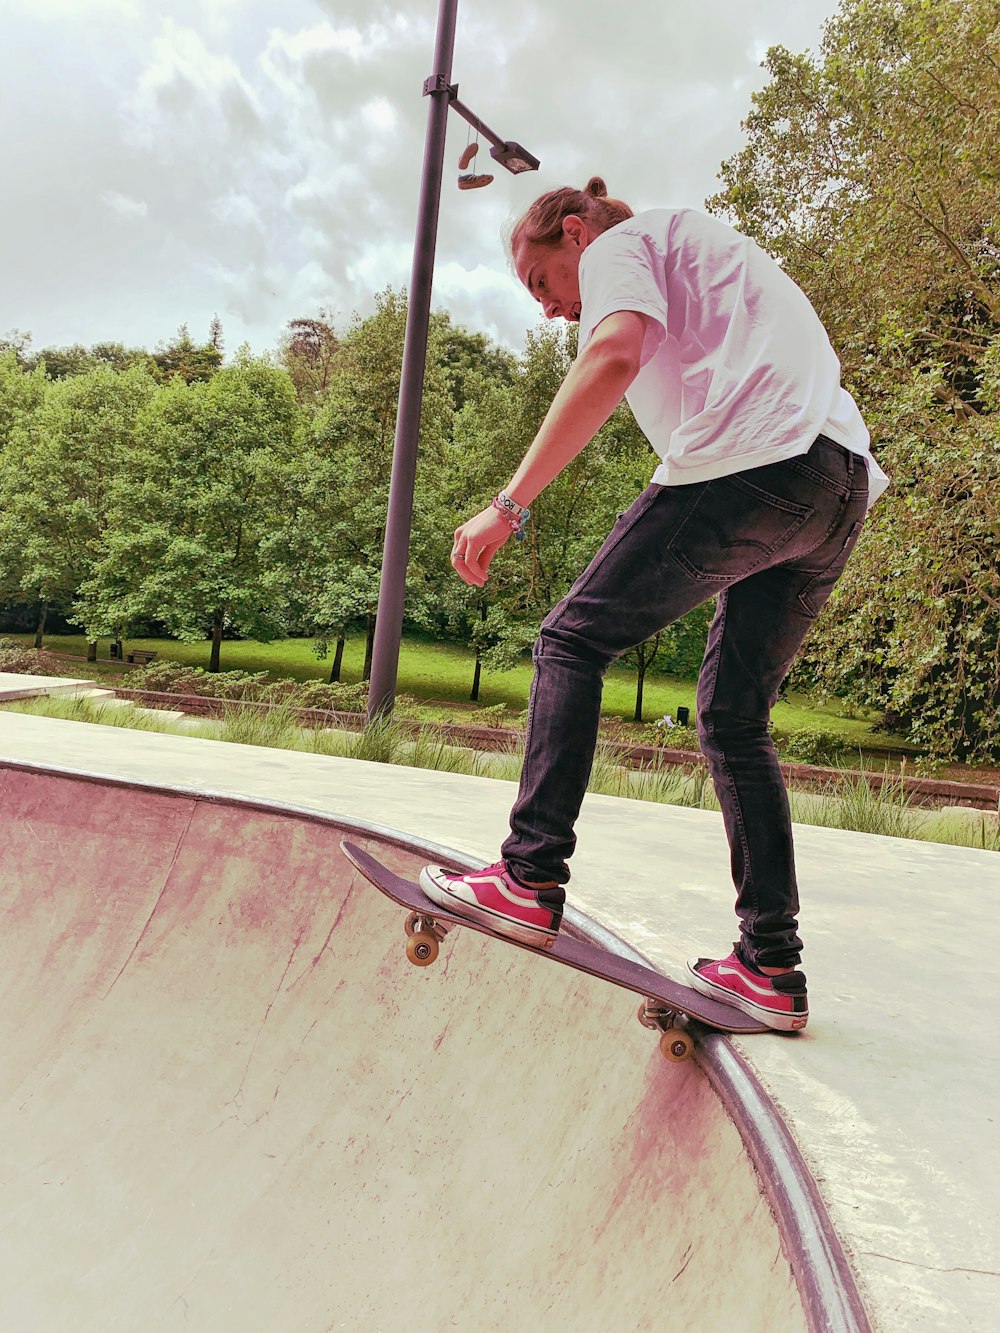 man wearing white shirt doing skateboard trick